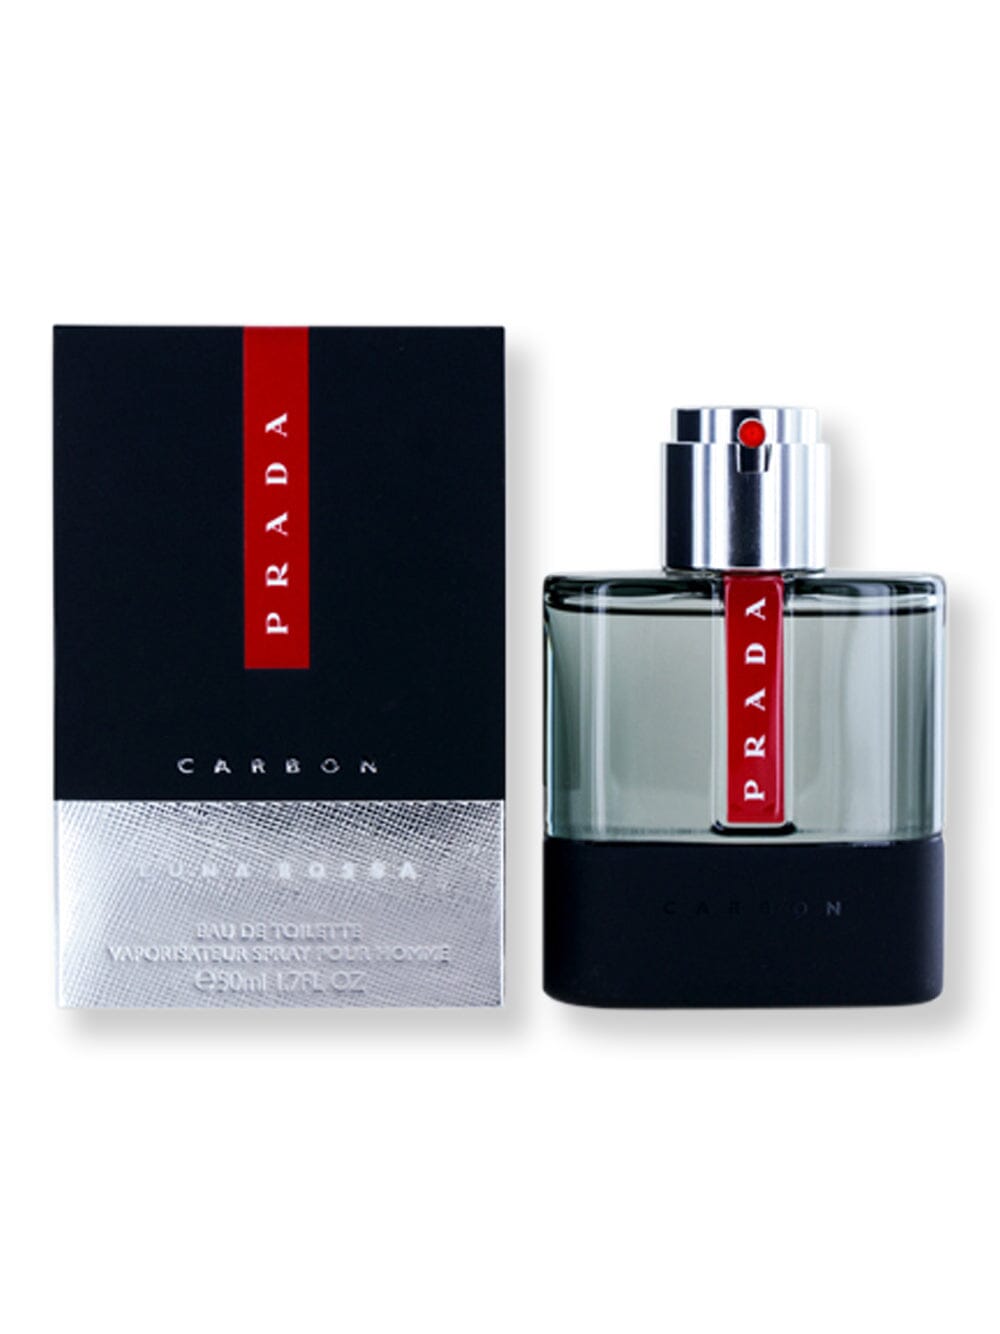 Prada Prada Luna Rossa Carbon EDT Spray 1.7 oz50 ml Perfume 